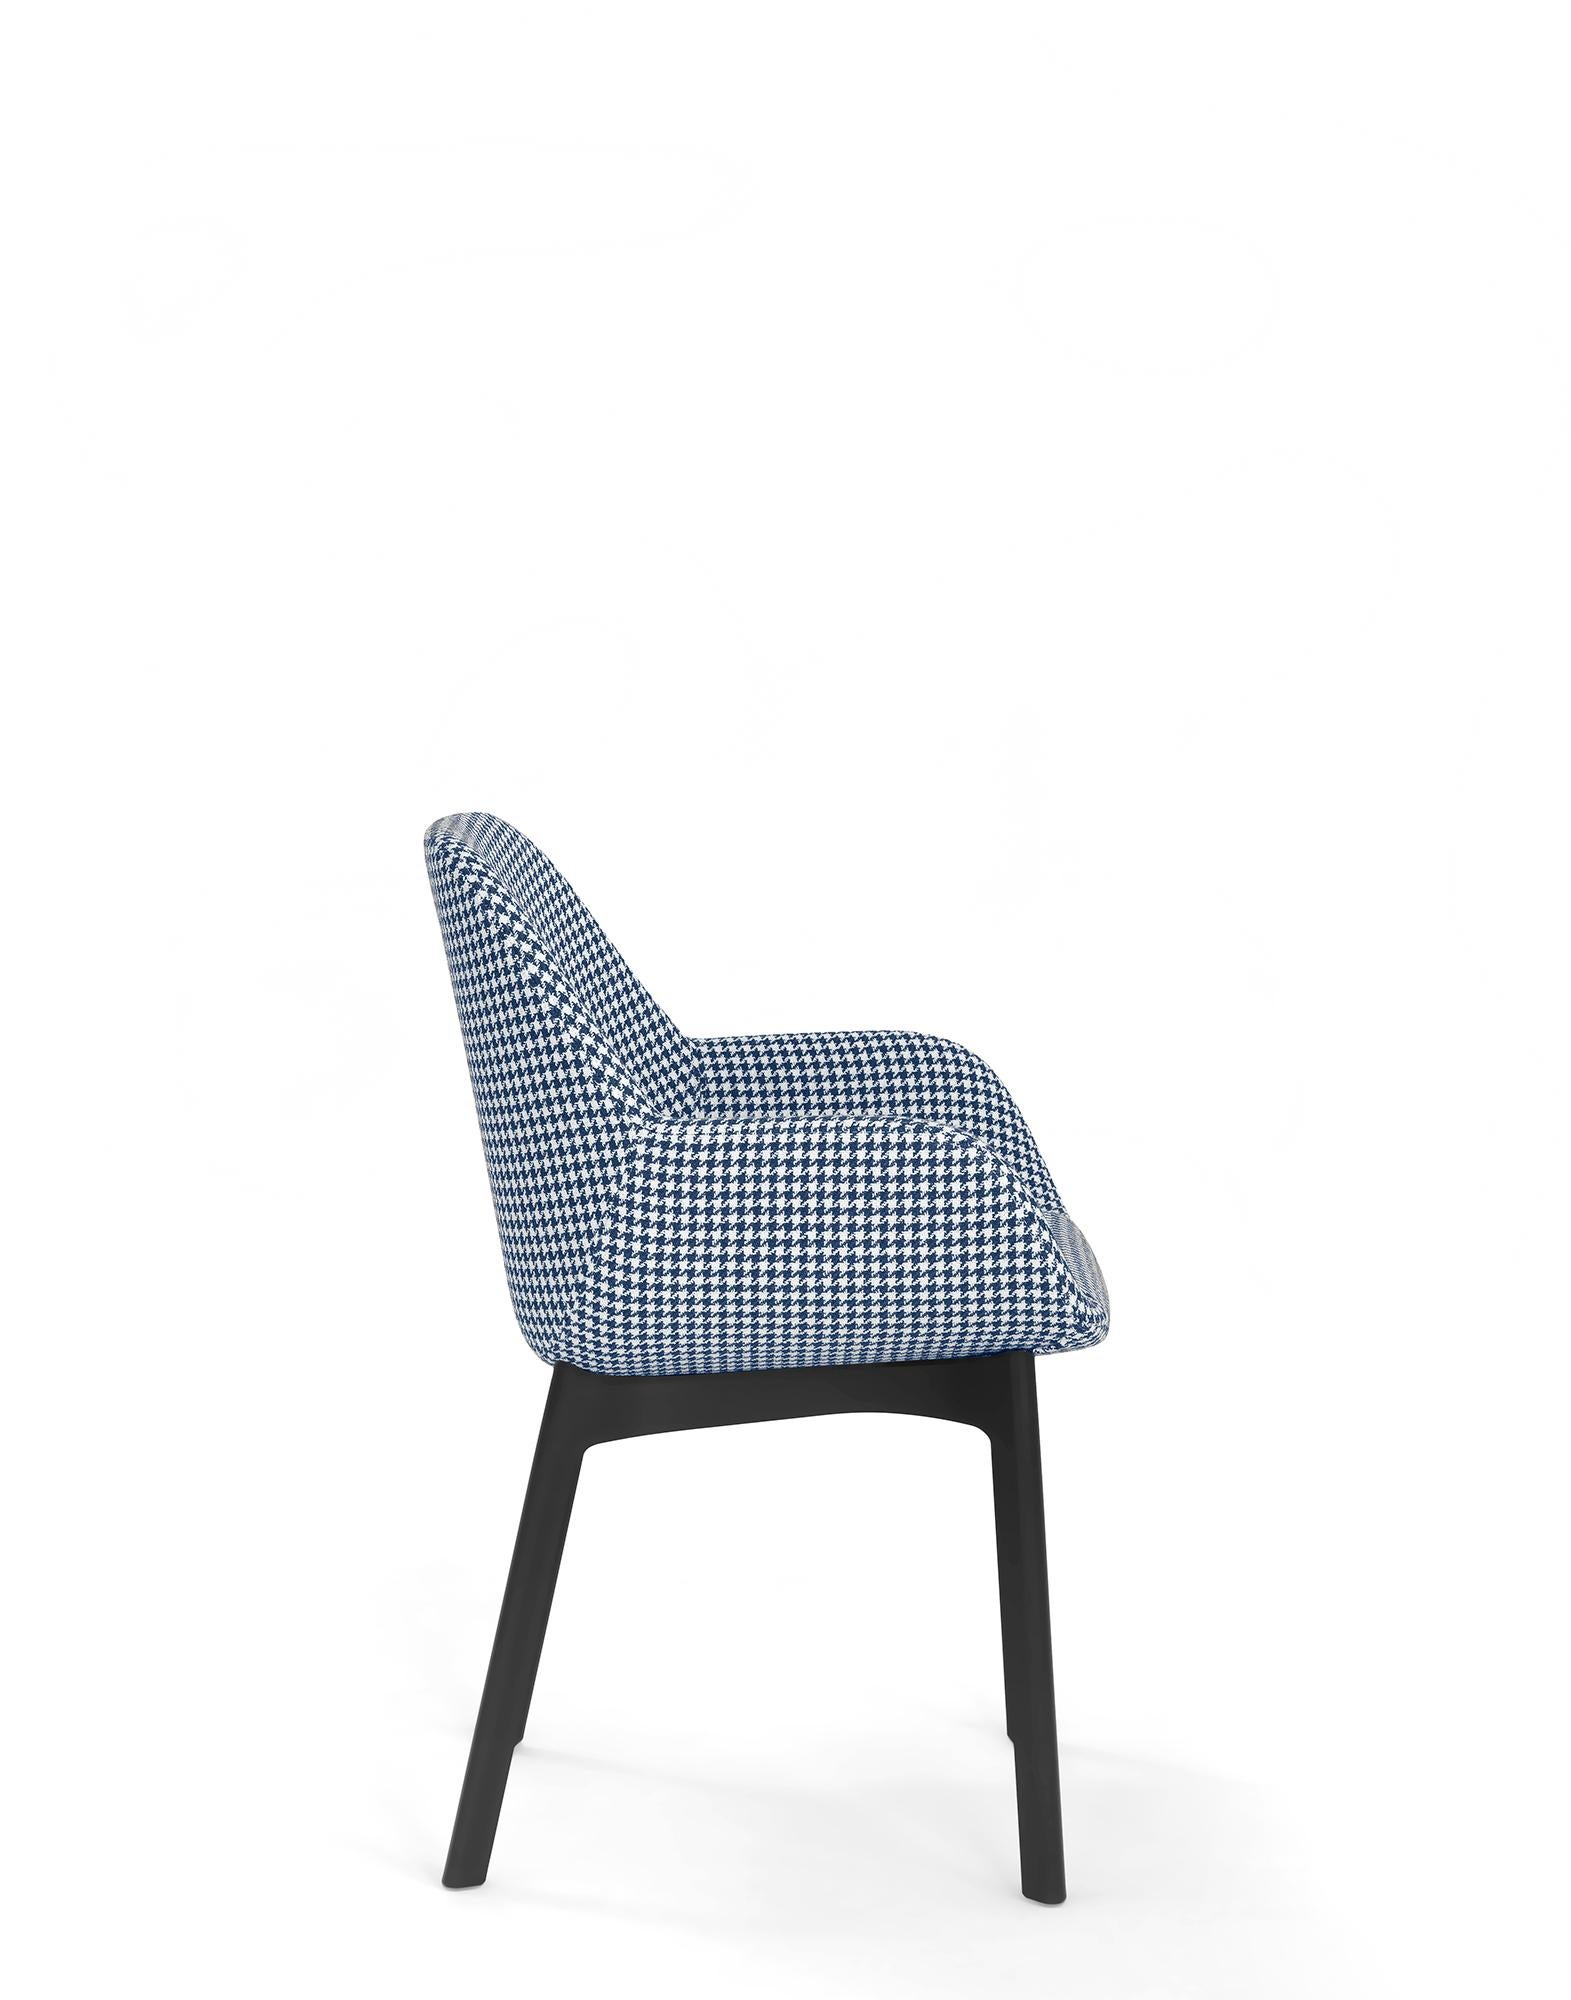 Clap est une petite chaise conçue spécialement pour le secteur contractuel, adaptée aux exigences d'ameublement les plus diverses.

La structure du siège est disponible en différentes couleurs, qui s'harmonisent transversalement avec les motifs du